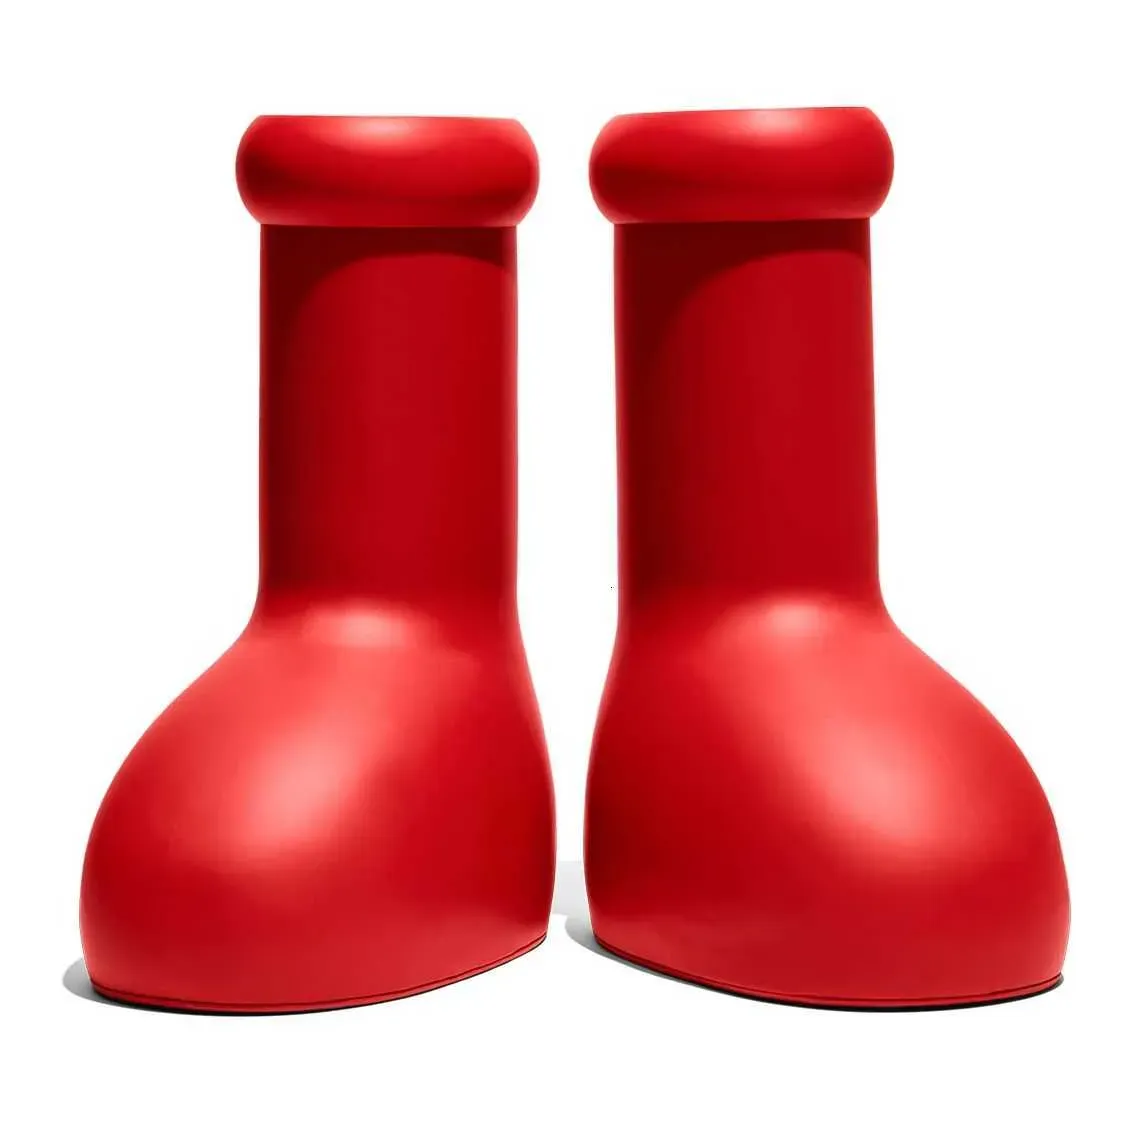 2023 Mschf Big Red Mens Womens Mighty Atom moda mais recente lançamento de botas grandes vermelhas impressão 3D criatividade Big Red Rain Snow Balloon bota personalizada Wtth Box